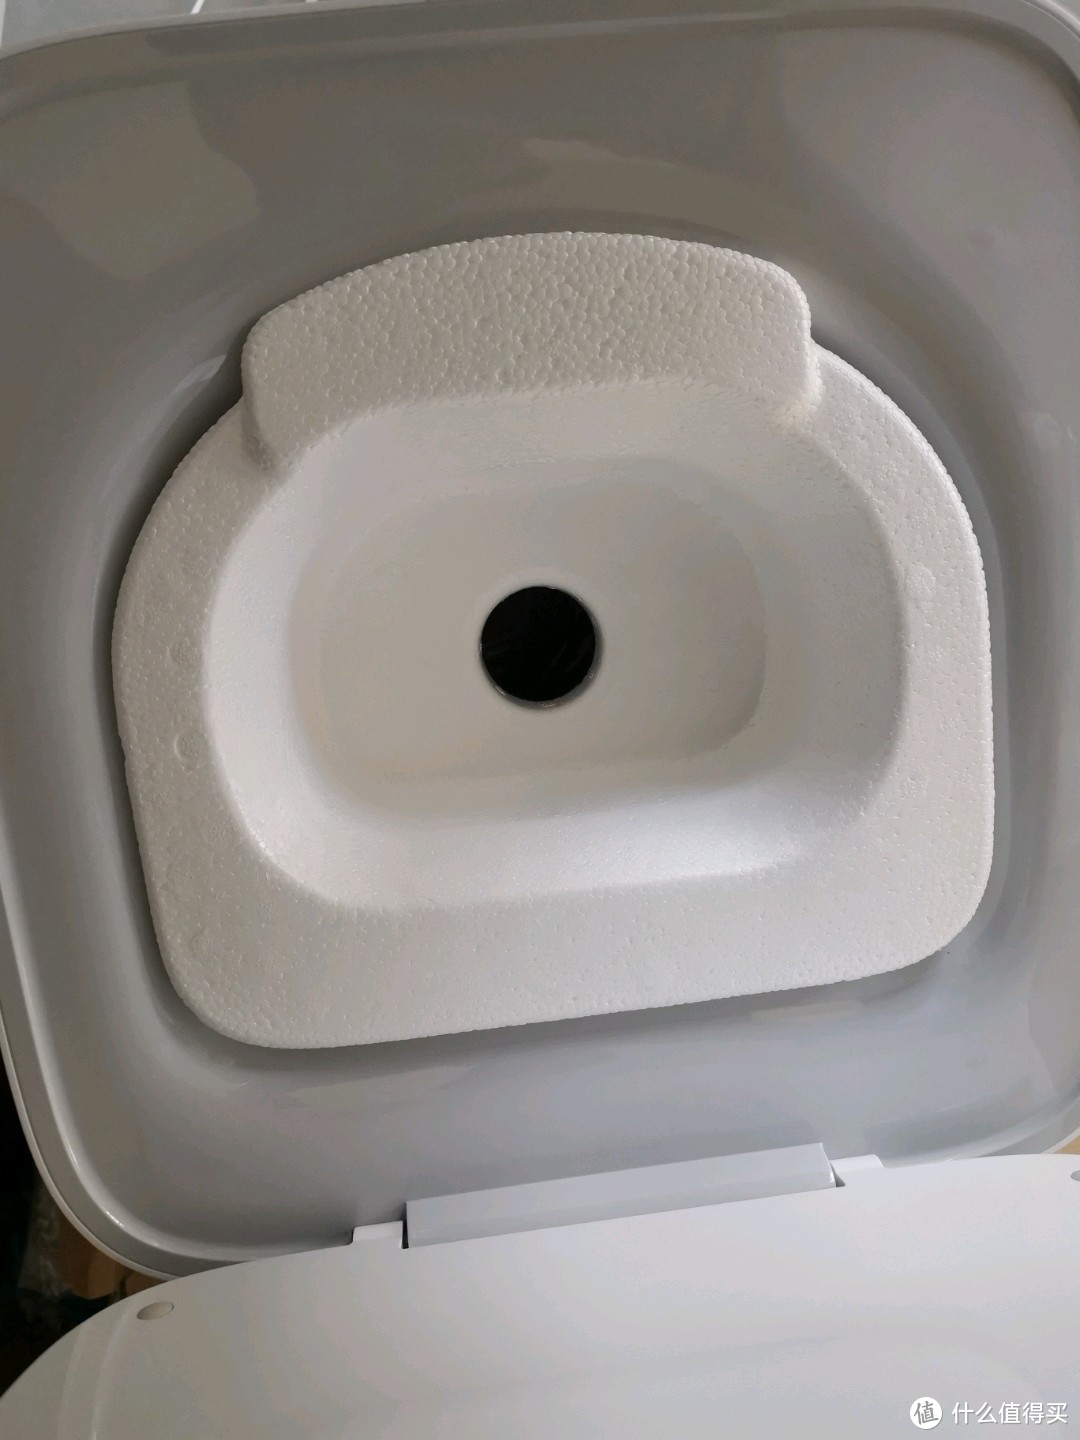 米家3kg波轮洗衣机开箱评测